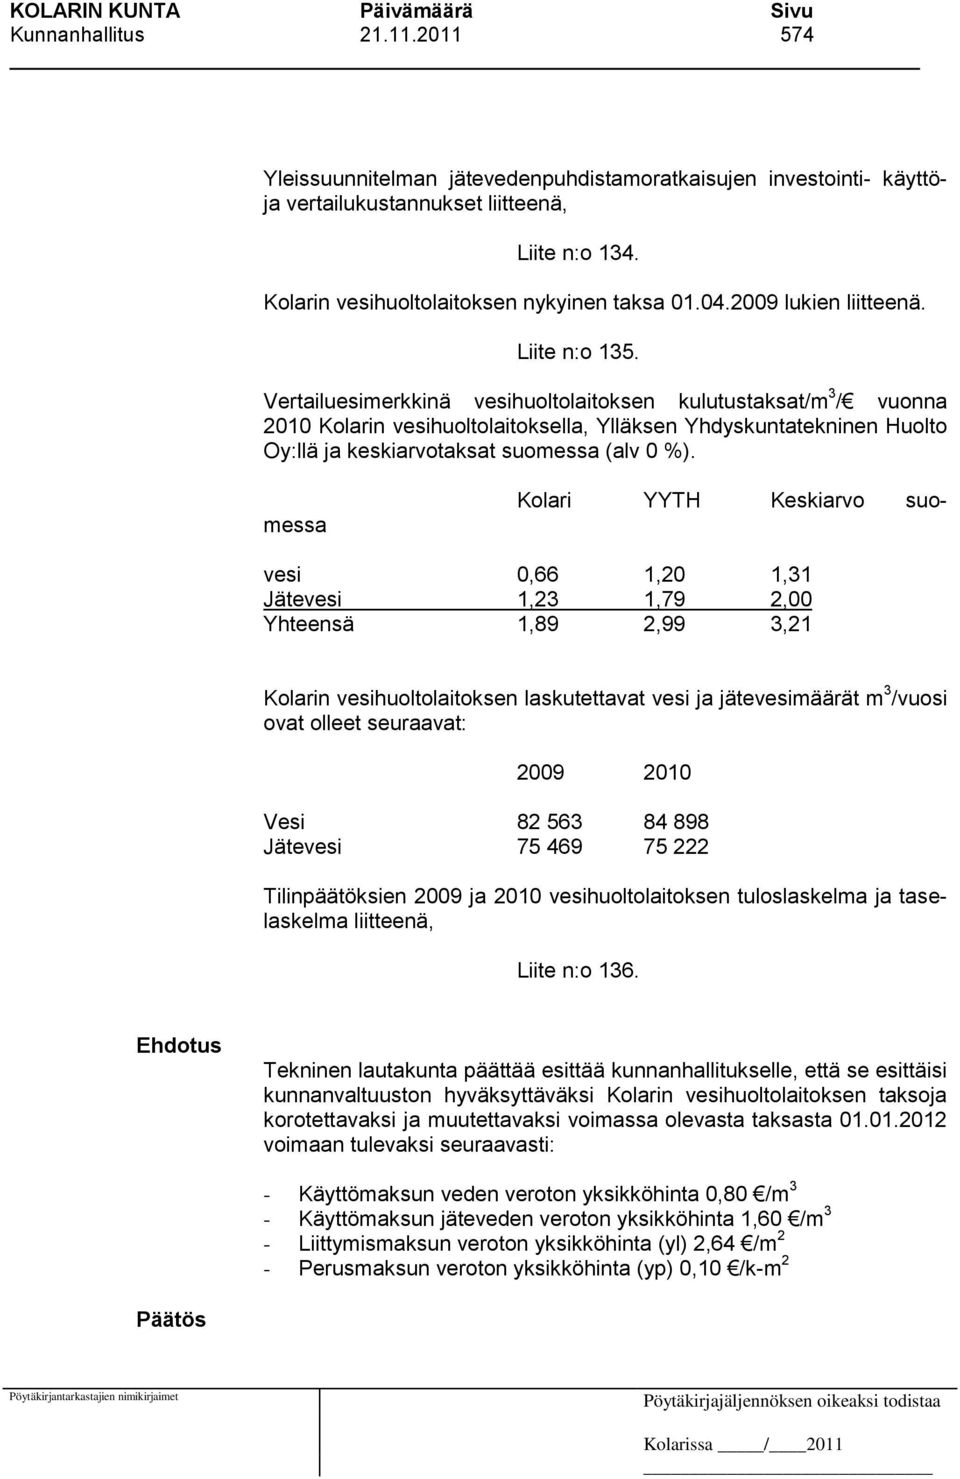 Vertailuesimerkkinä vesihuoltolaitoksen kulutustaksat/m 3 / vuonna 2010 Kolarin vesihuoltolaitoksella, Ylläksen Yhdyskuntatekninen Huolto Oy:llä ja keskiarvotaksat suomessa (alv 0 %).